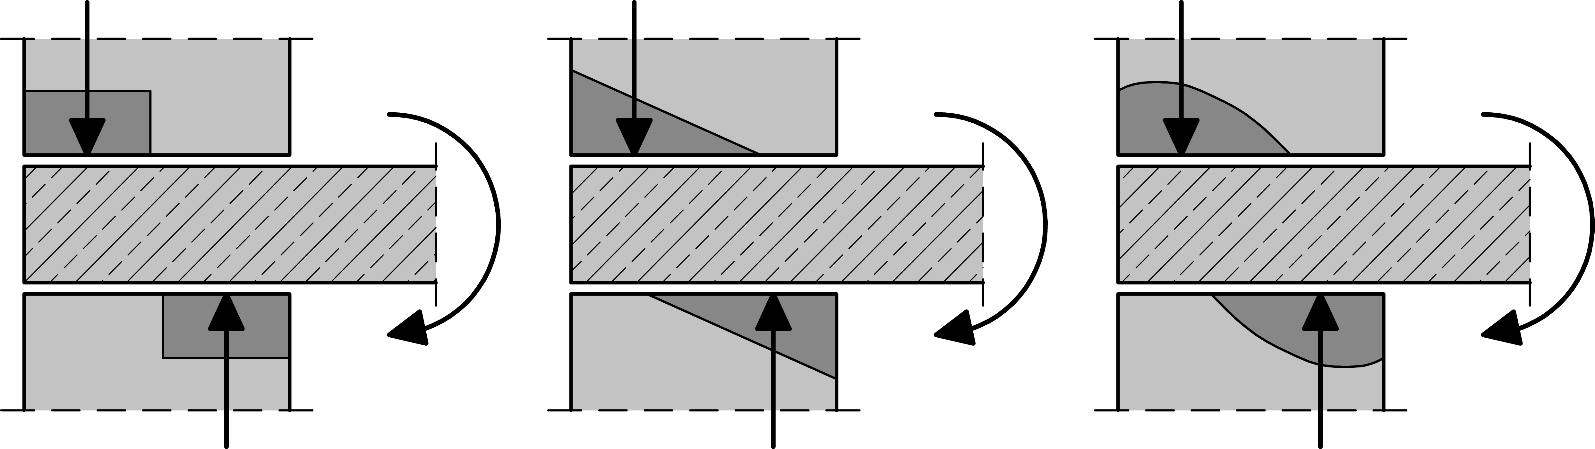 Ansätze zur Spannungsverteilung im Wand-Decken-Knoten 